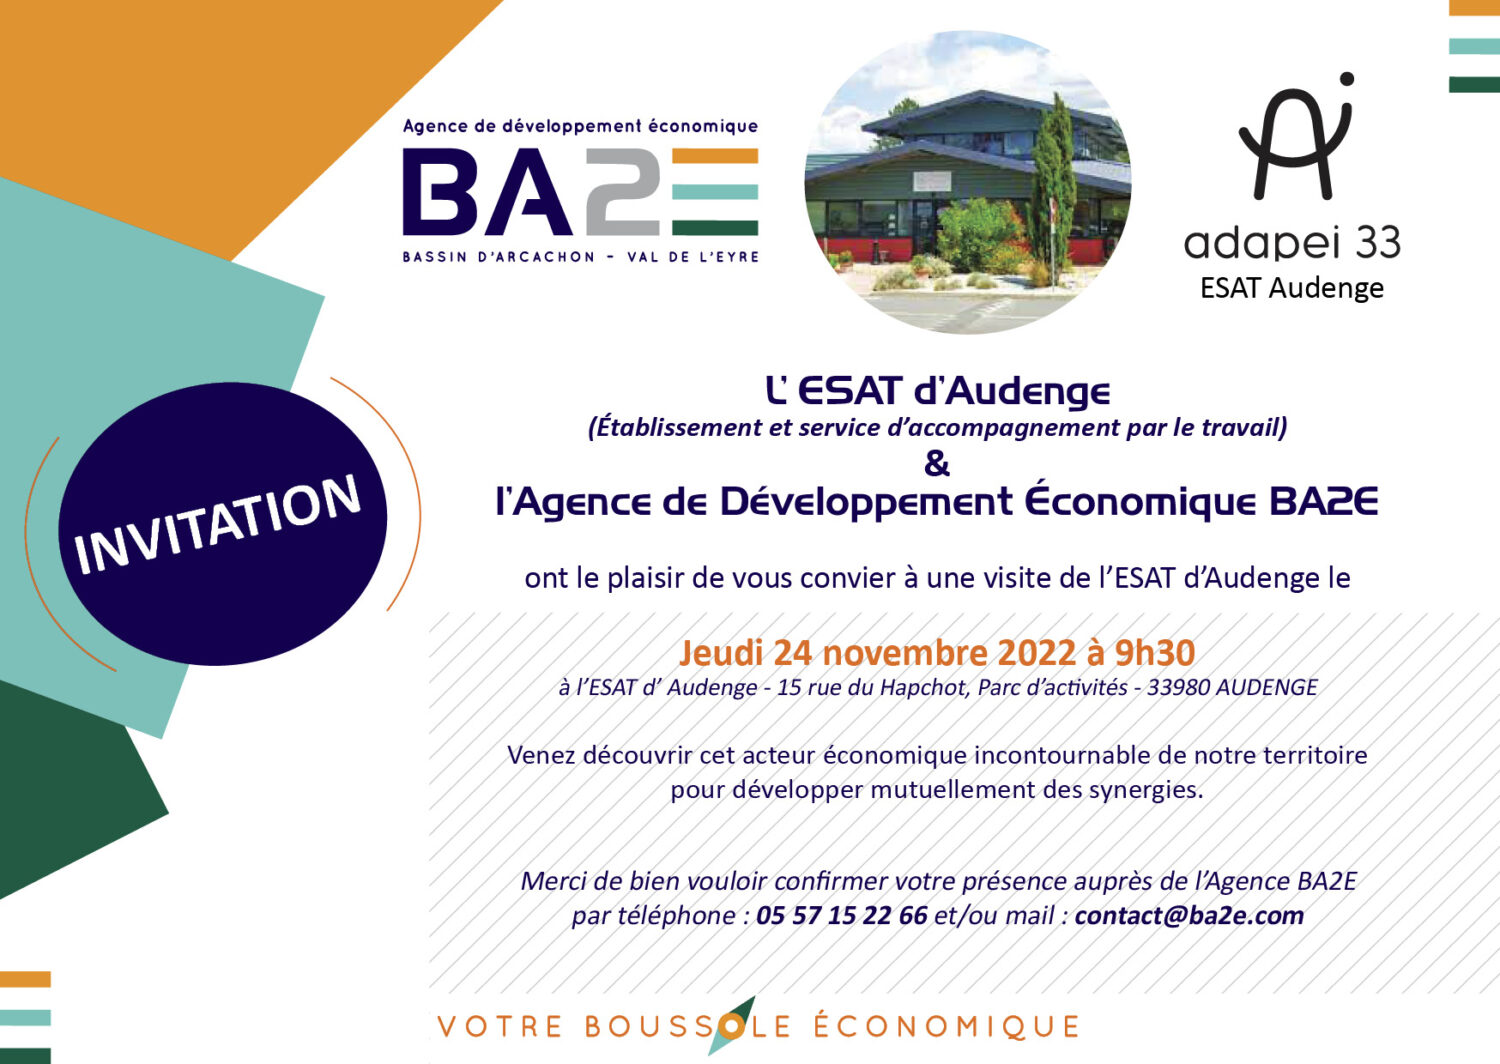 INVITATION VISITE ESAT AUDENGE | Agenda économique